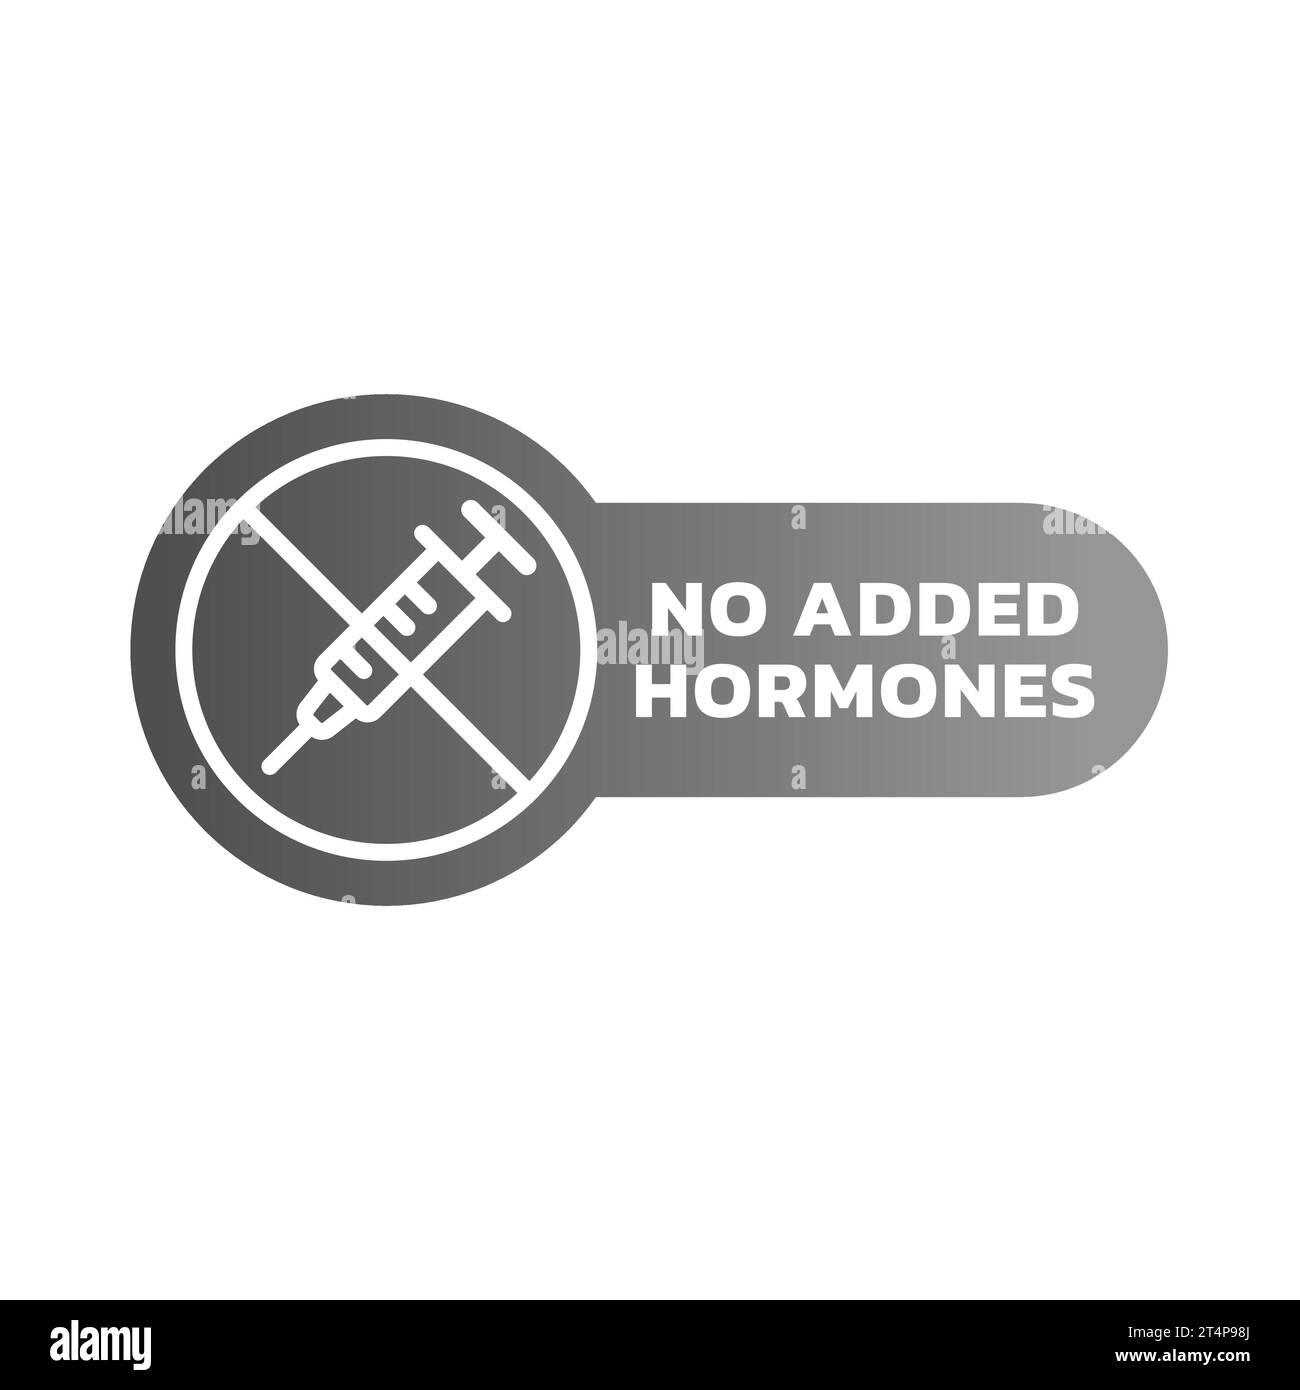 No added hormones vector label. Hormones free meat or food sticker ...